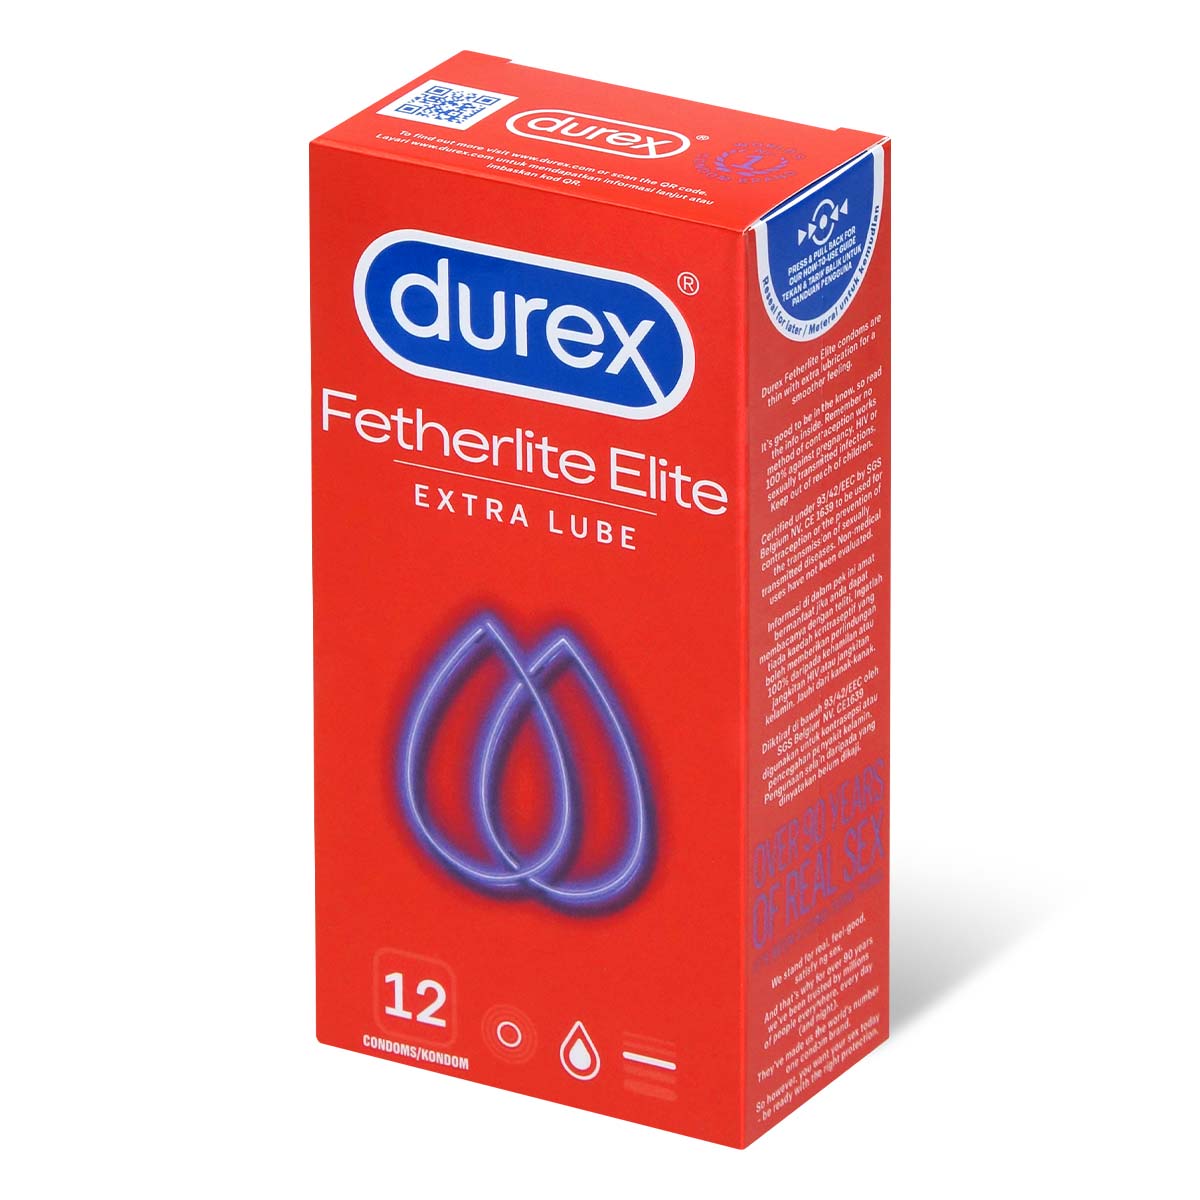 Durex Fetherlite Elite 12's Pack Latex Condom-p_1